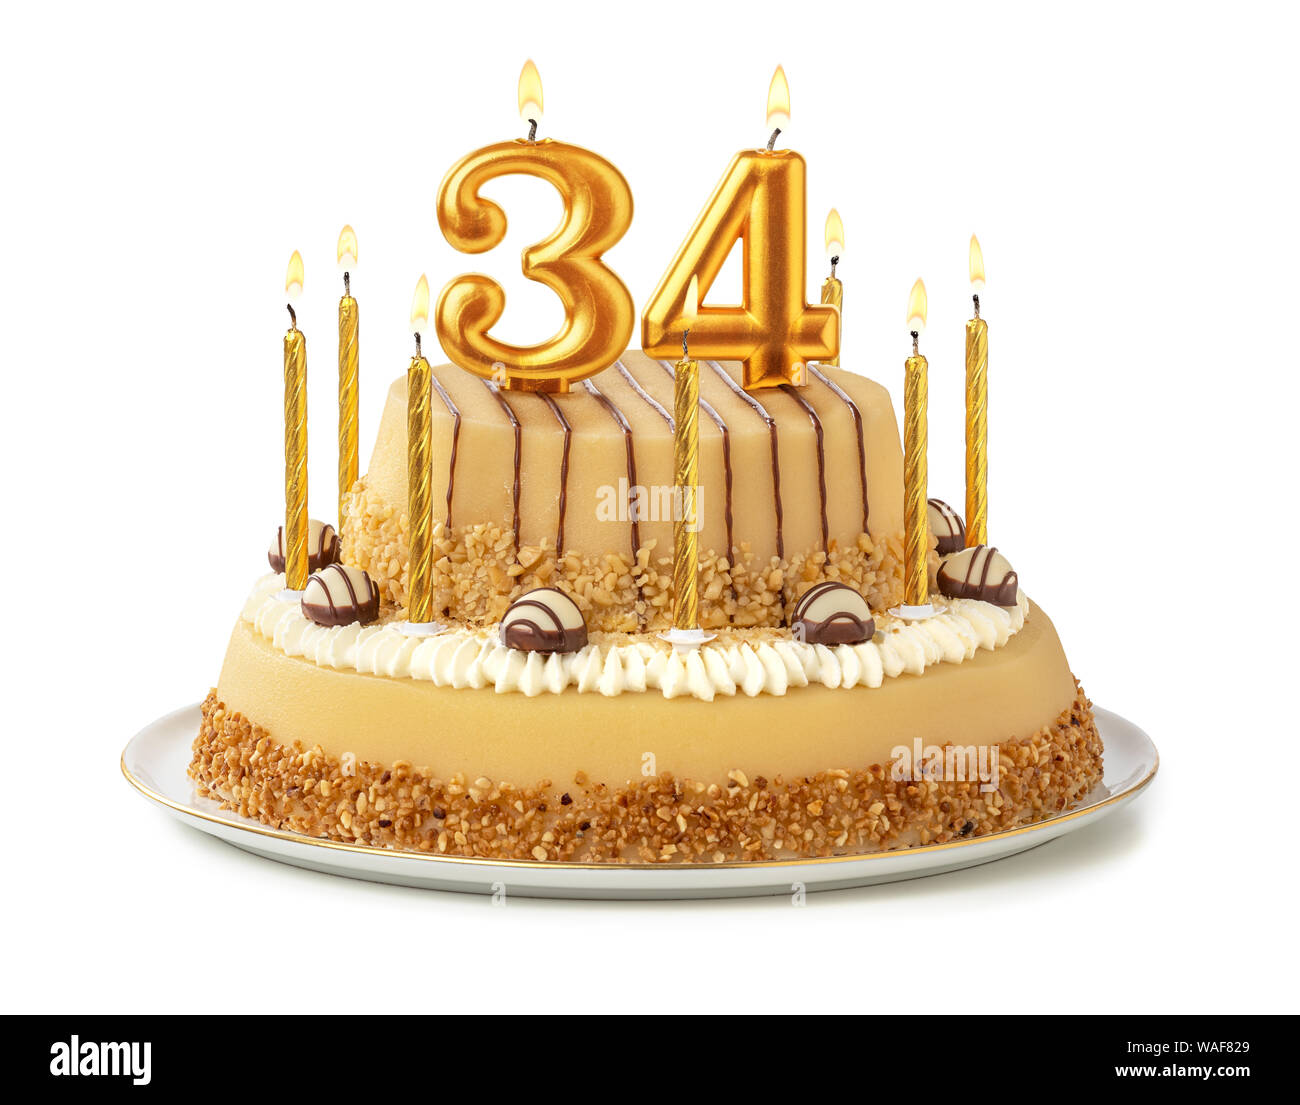 Gâteau de fête avec des bougies d'or - Numéro 34 Photo Stock - Alamy